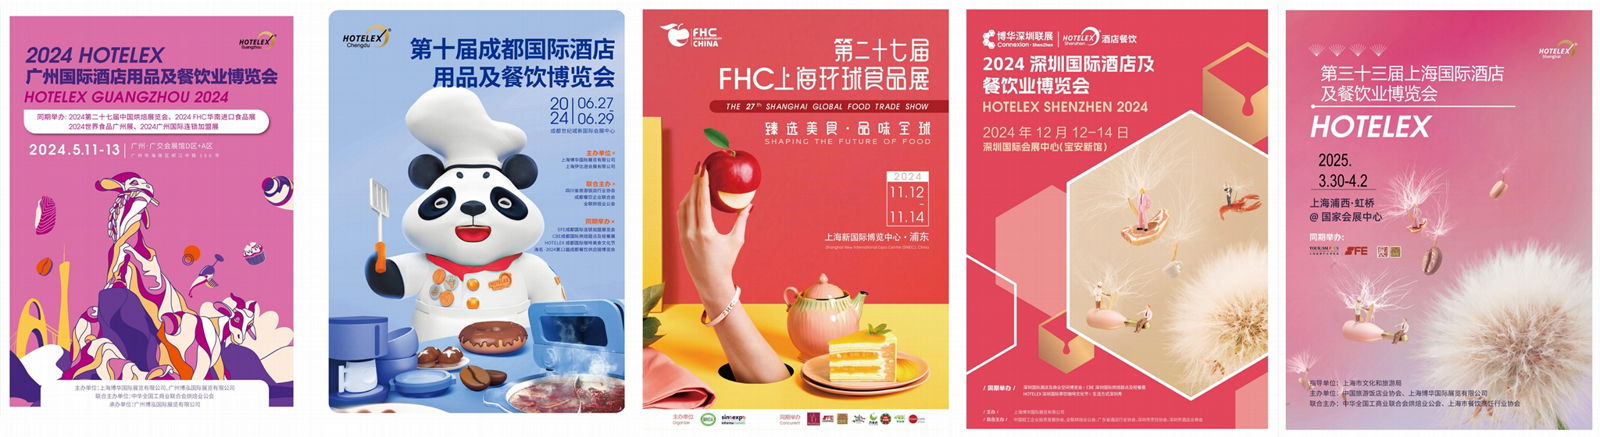 2025第三十三届上海国际酒店及餐饮业博览会HOTELEX(官方发布） 2